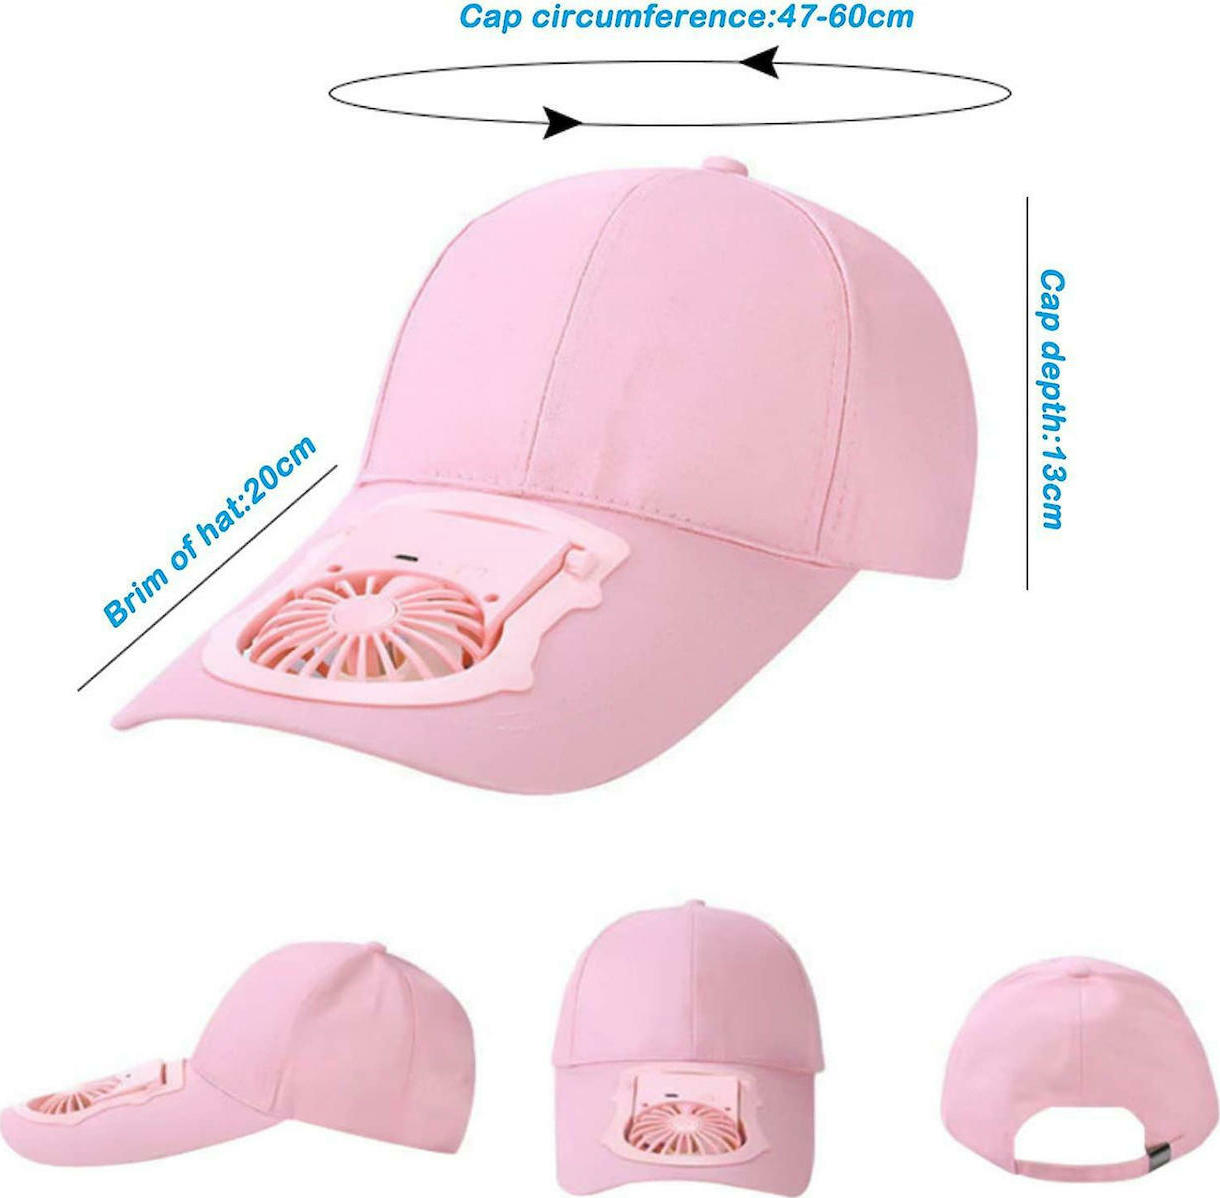 Fan Hat Καπέλο Με Ανεμιστήρα 3 Ταχυτήτων USB Ροζ | Skroutz.gr